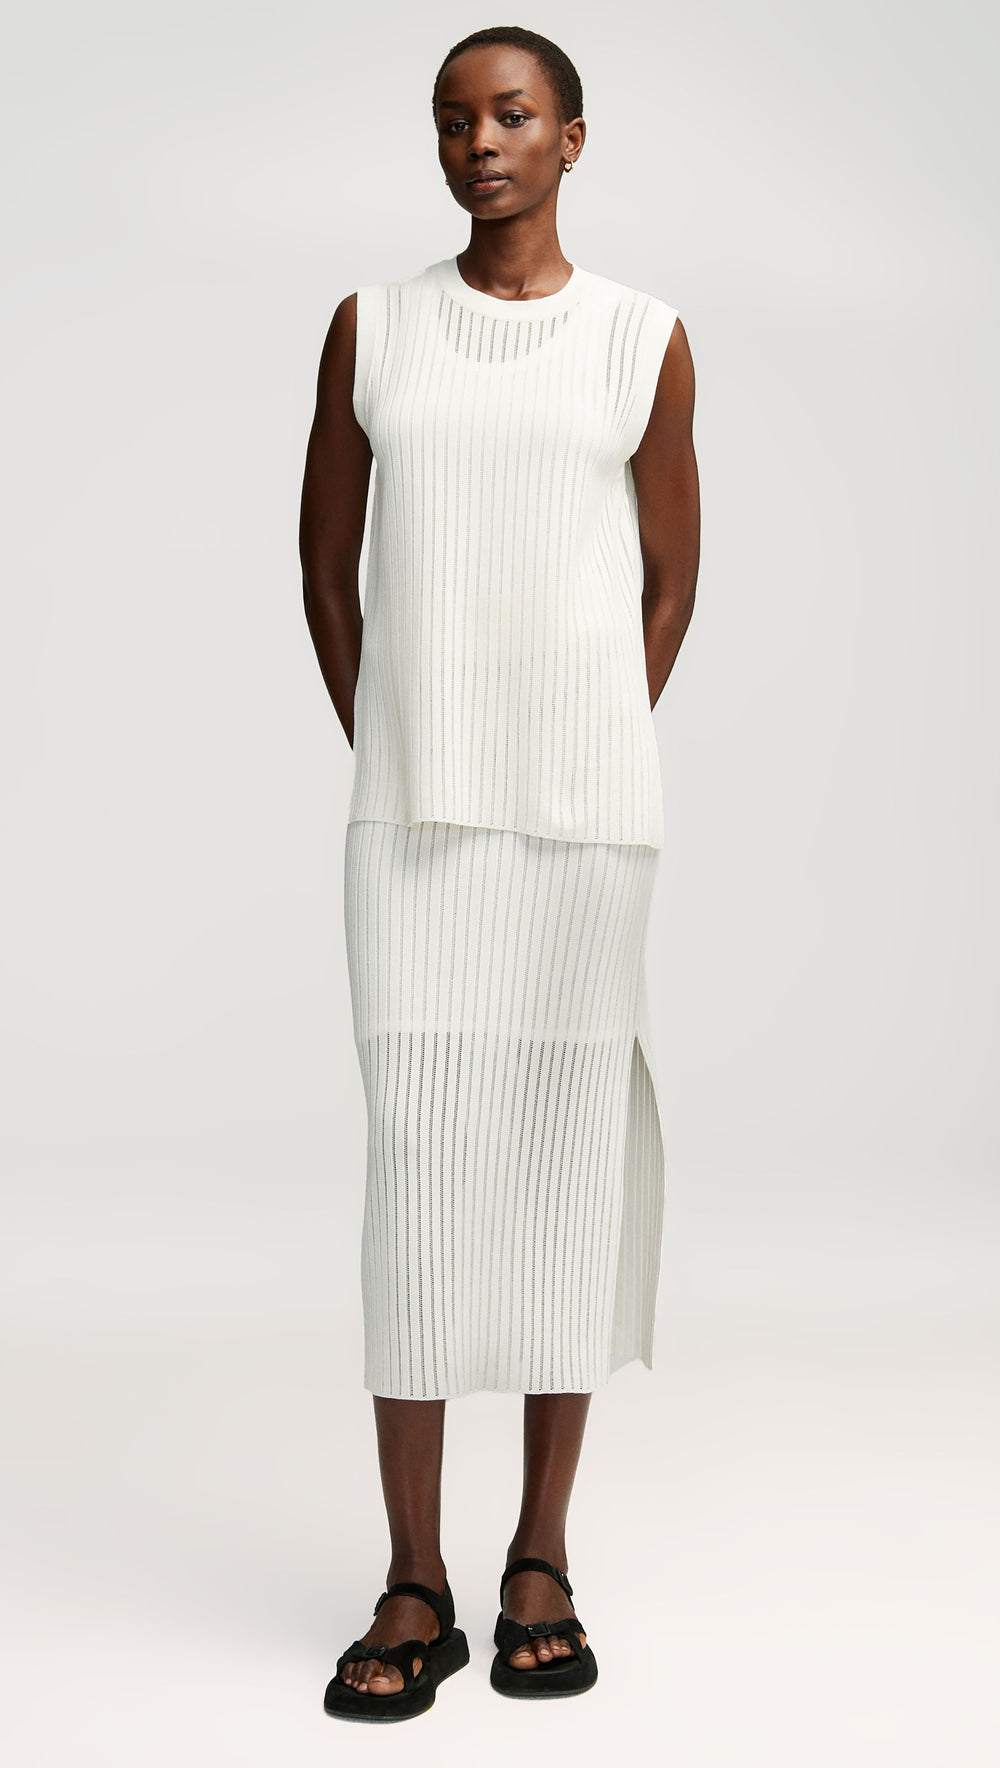 Knit Skirt in Mercerized Cotton | White